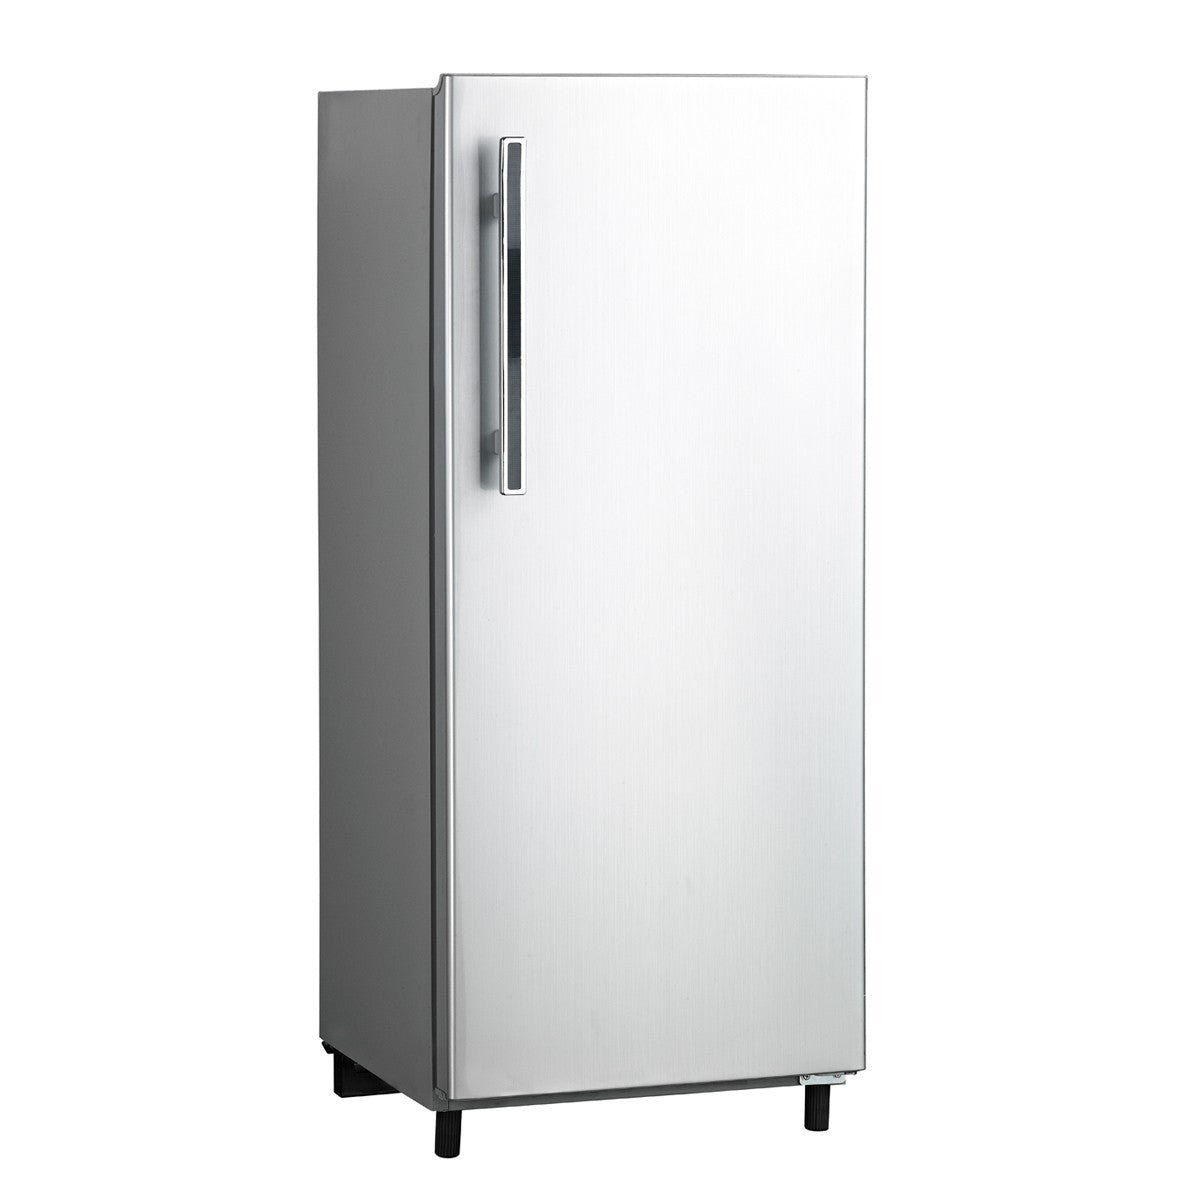 Midea 235 Litres Single Door Refrigerator